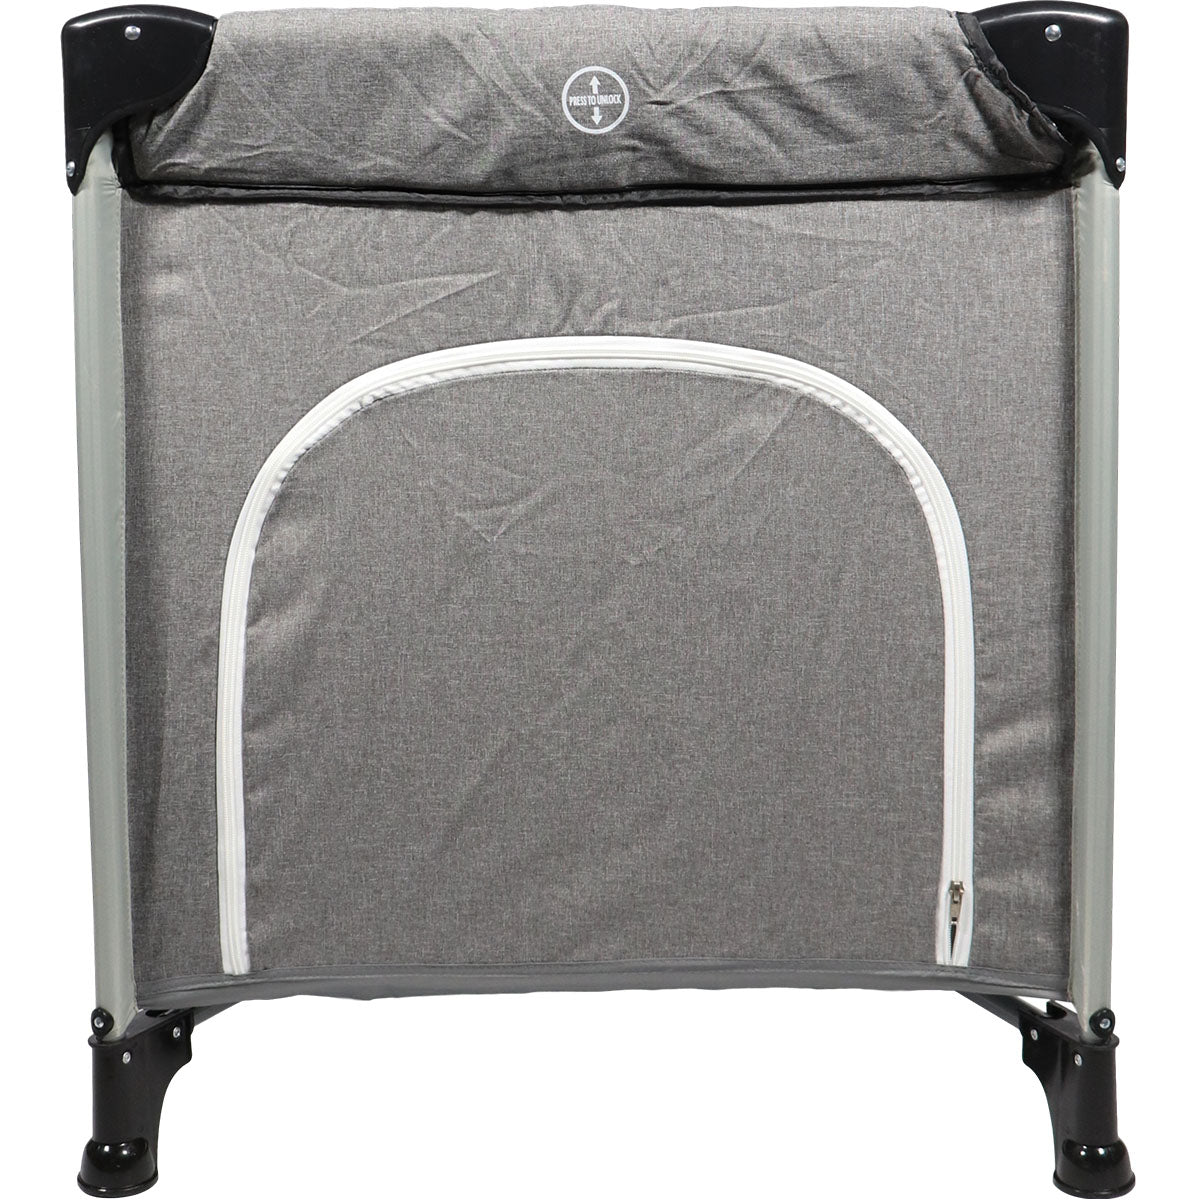 Het Ding reisbed deluxe in de prachtige kleur Stripe grey melange biedt een comfortabele en gemakkelijke oplossing voor dutjes onderweg. Dit campingbedje is ontworpen volgens het 'paraplu principe'. VanZus